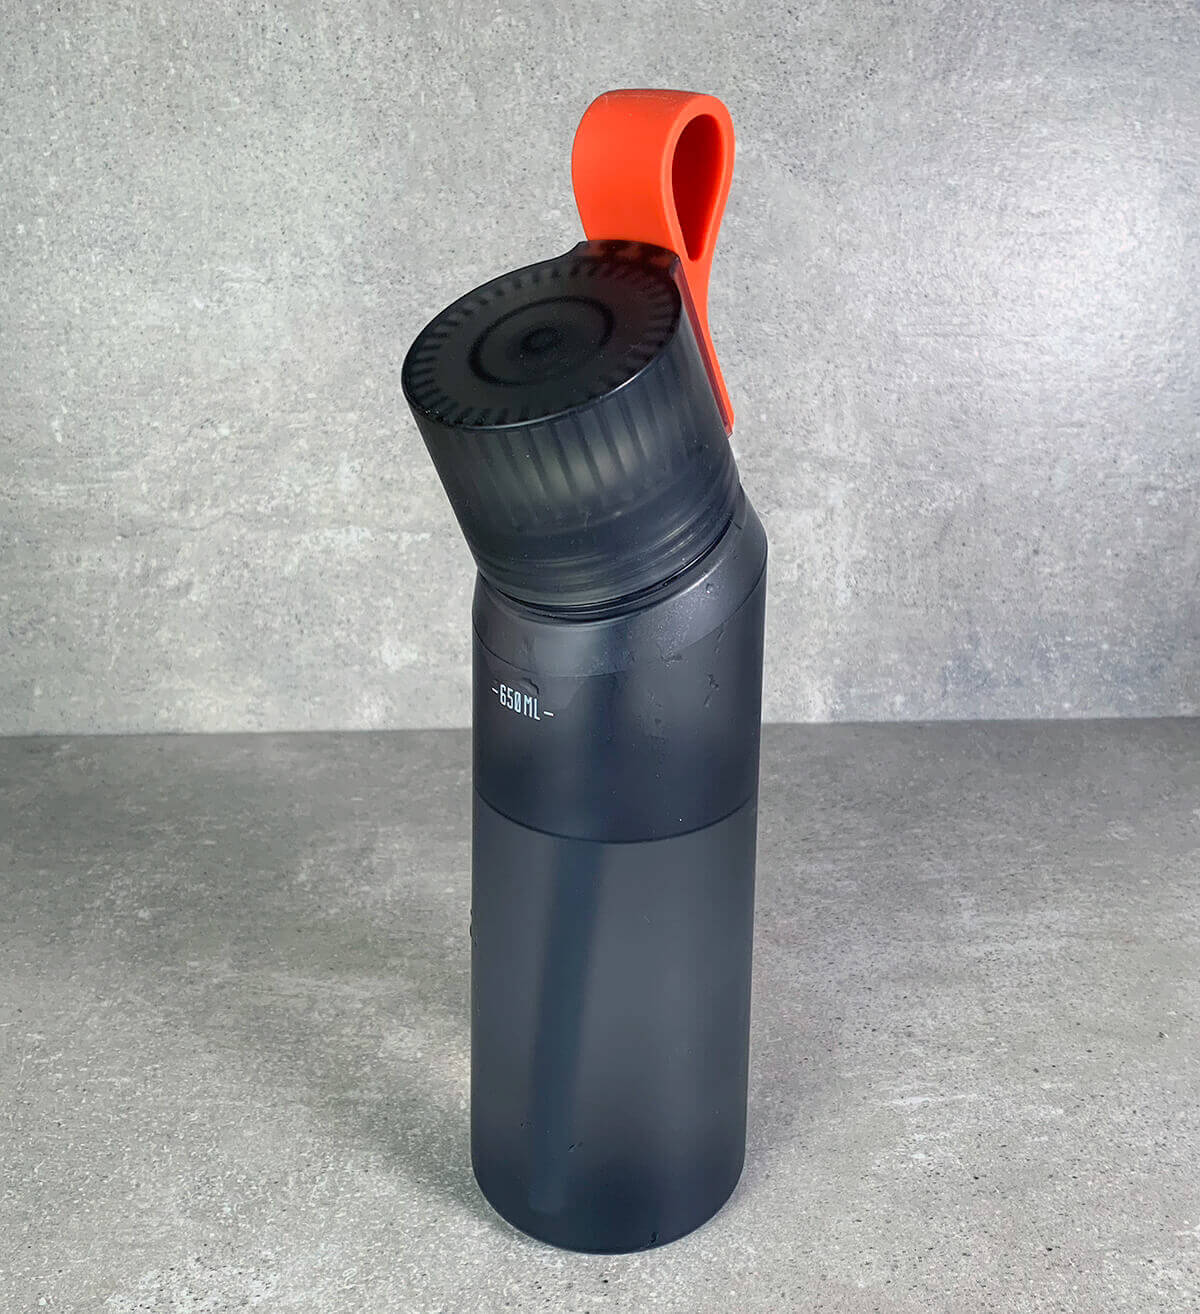 El sistema de hidratación Air Up combina una botella de agua reutilizable  diseñada a la medida con anillos de PP impregnados de aroma que transmiten  el sabor a través del sentido del olfato de los consumidores.